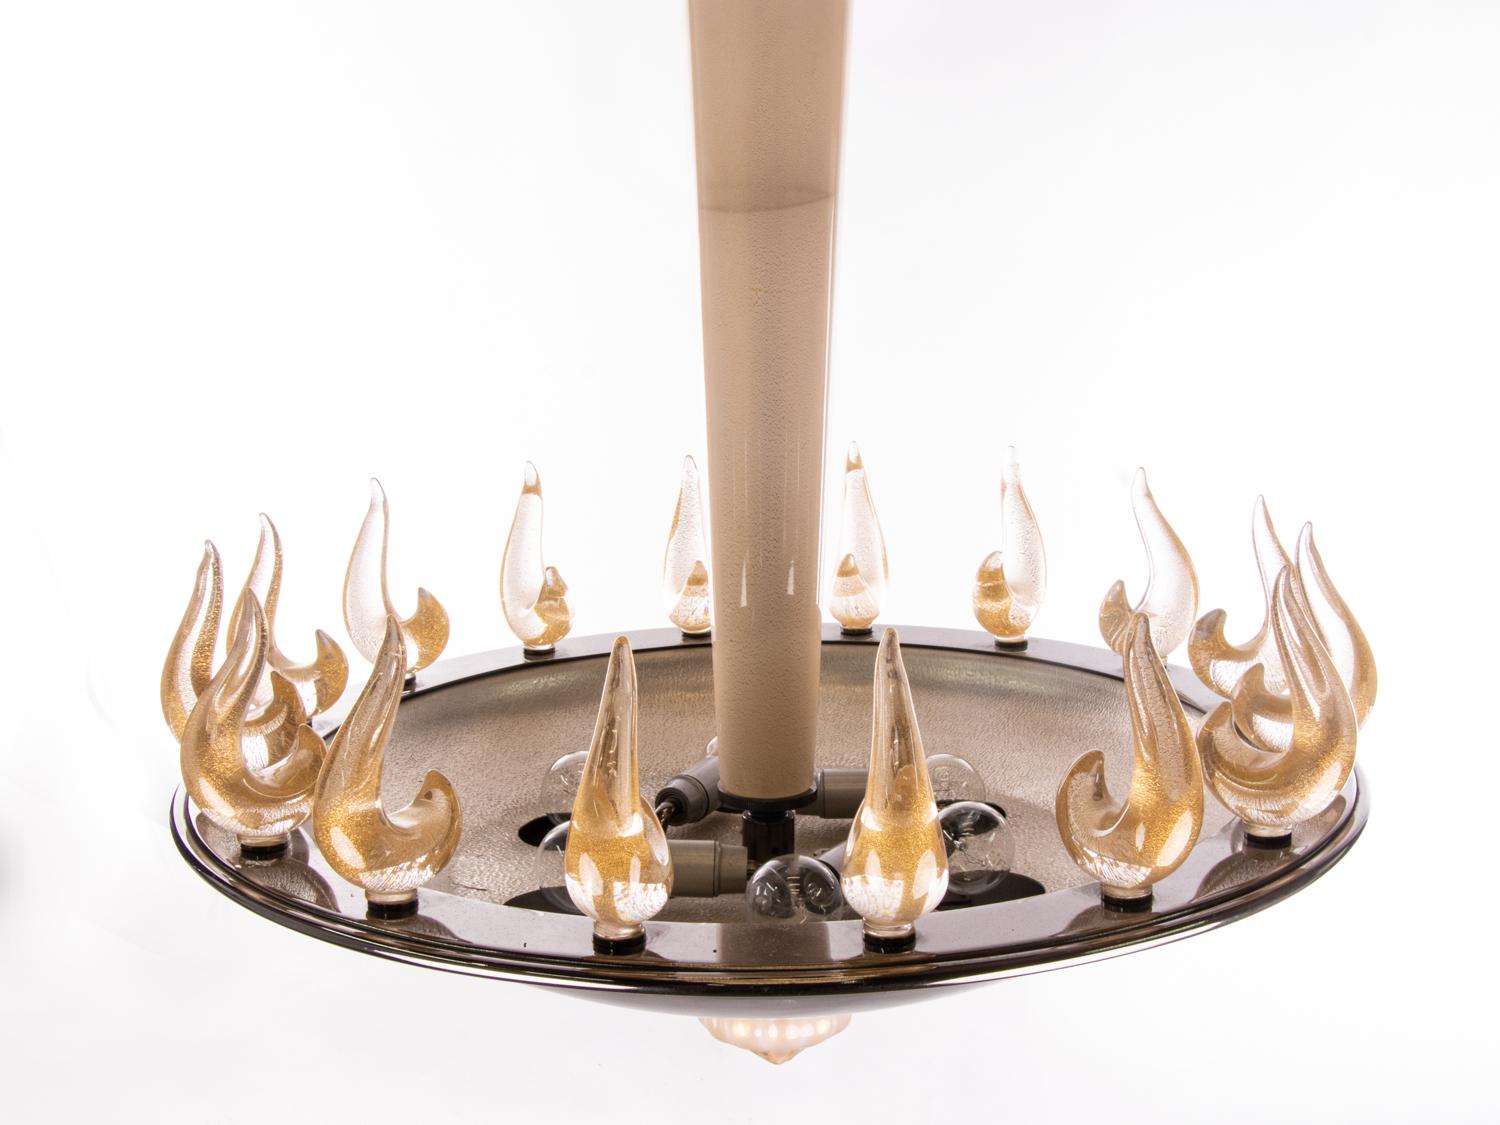 Eleganter und seltener Kronleuchter aus mundgeblasenem venezianischem Murano-Glas mit goldenen Einschlüssen, die elegant um eine schöne dunkle Metallschale wachsen und am Glasstab und Baldachin hängen. 

Jede Flamme wird in das Metallgehäuse